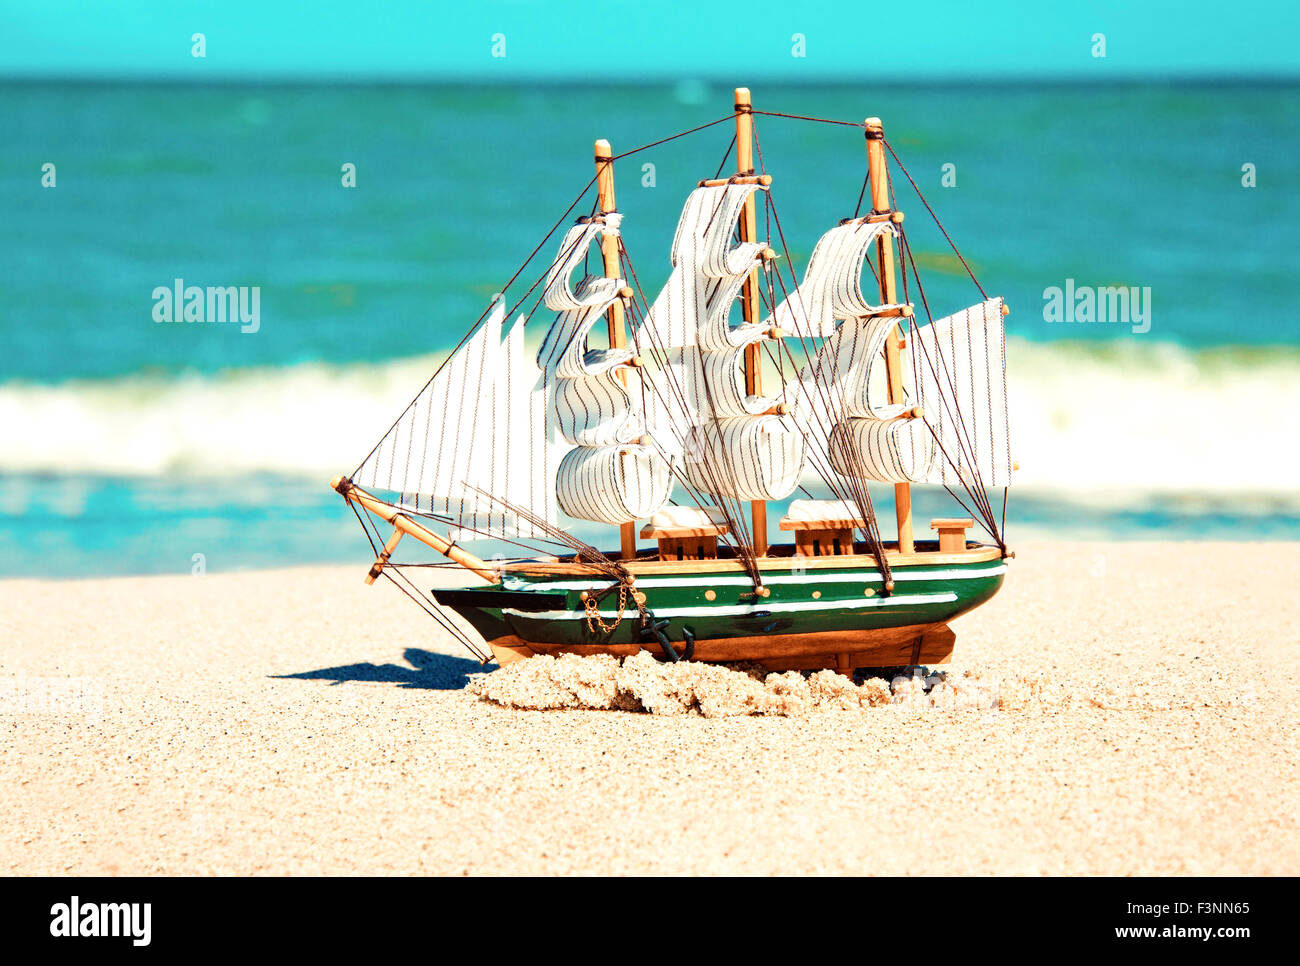 Souvenir immagine concettuale. Modello di nave in sabbia vicino all'oceano. Foto Stock